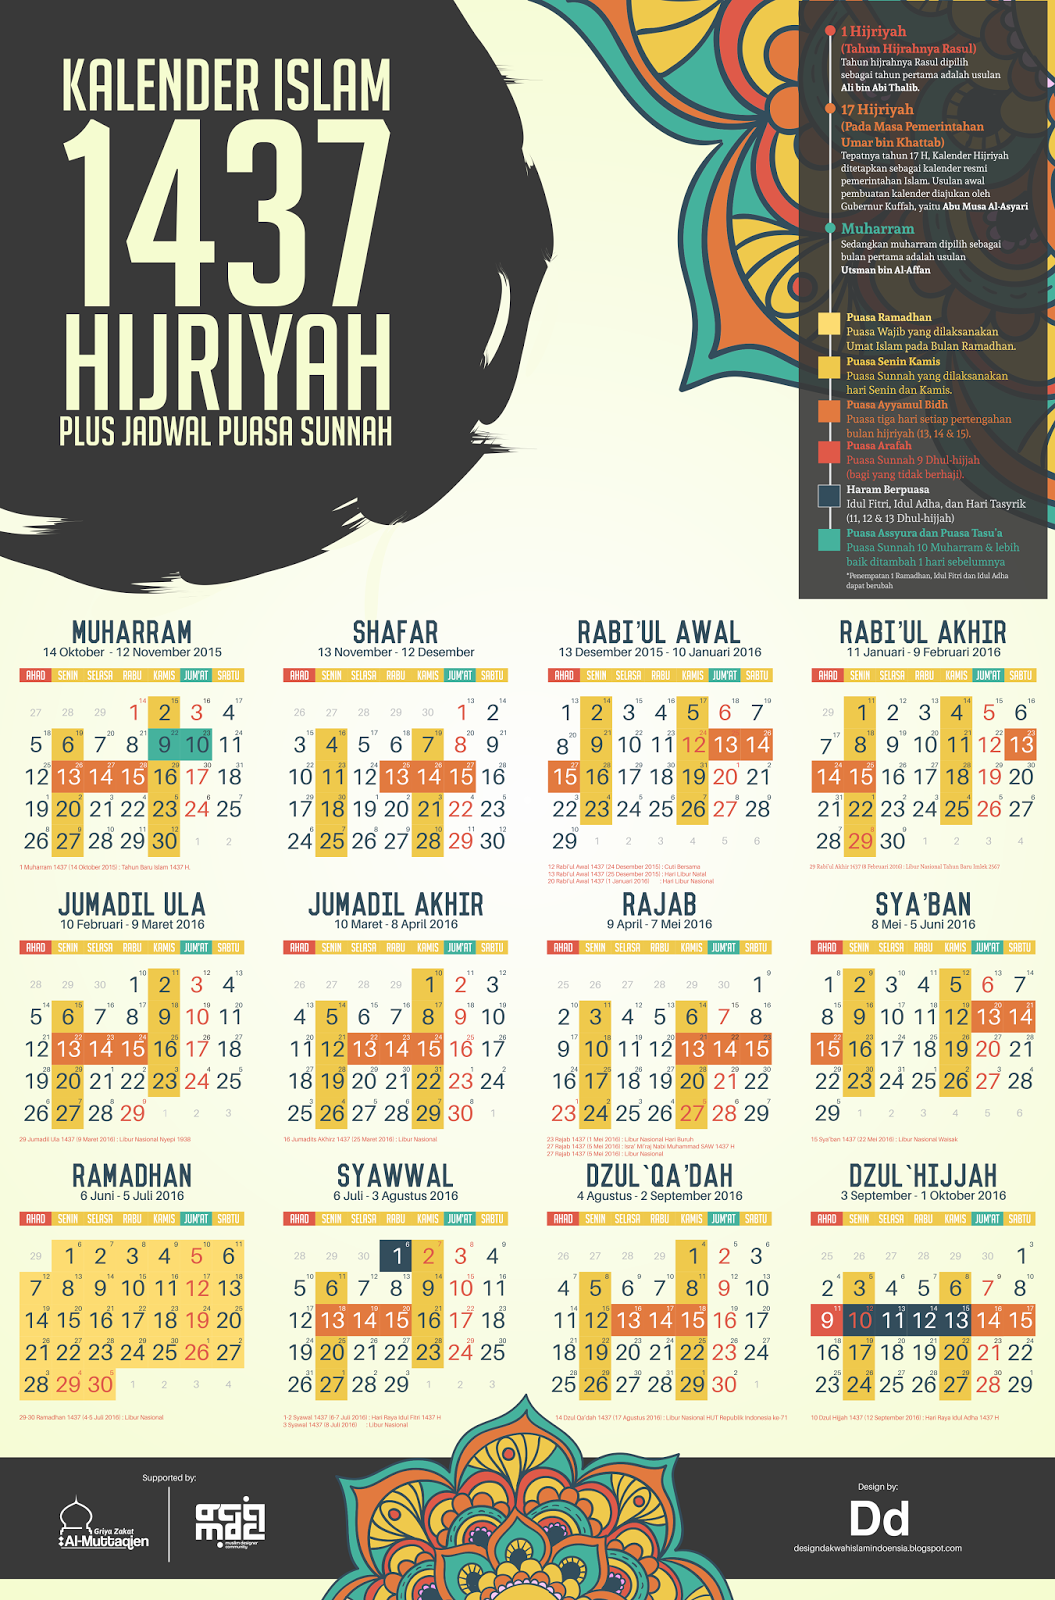  Kalender  Islam  1437 Hijriyah Plus Puasa Sunnah   